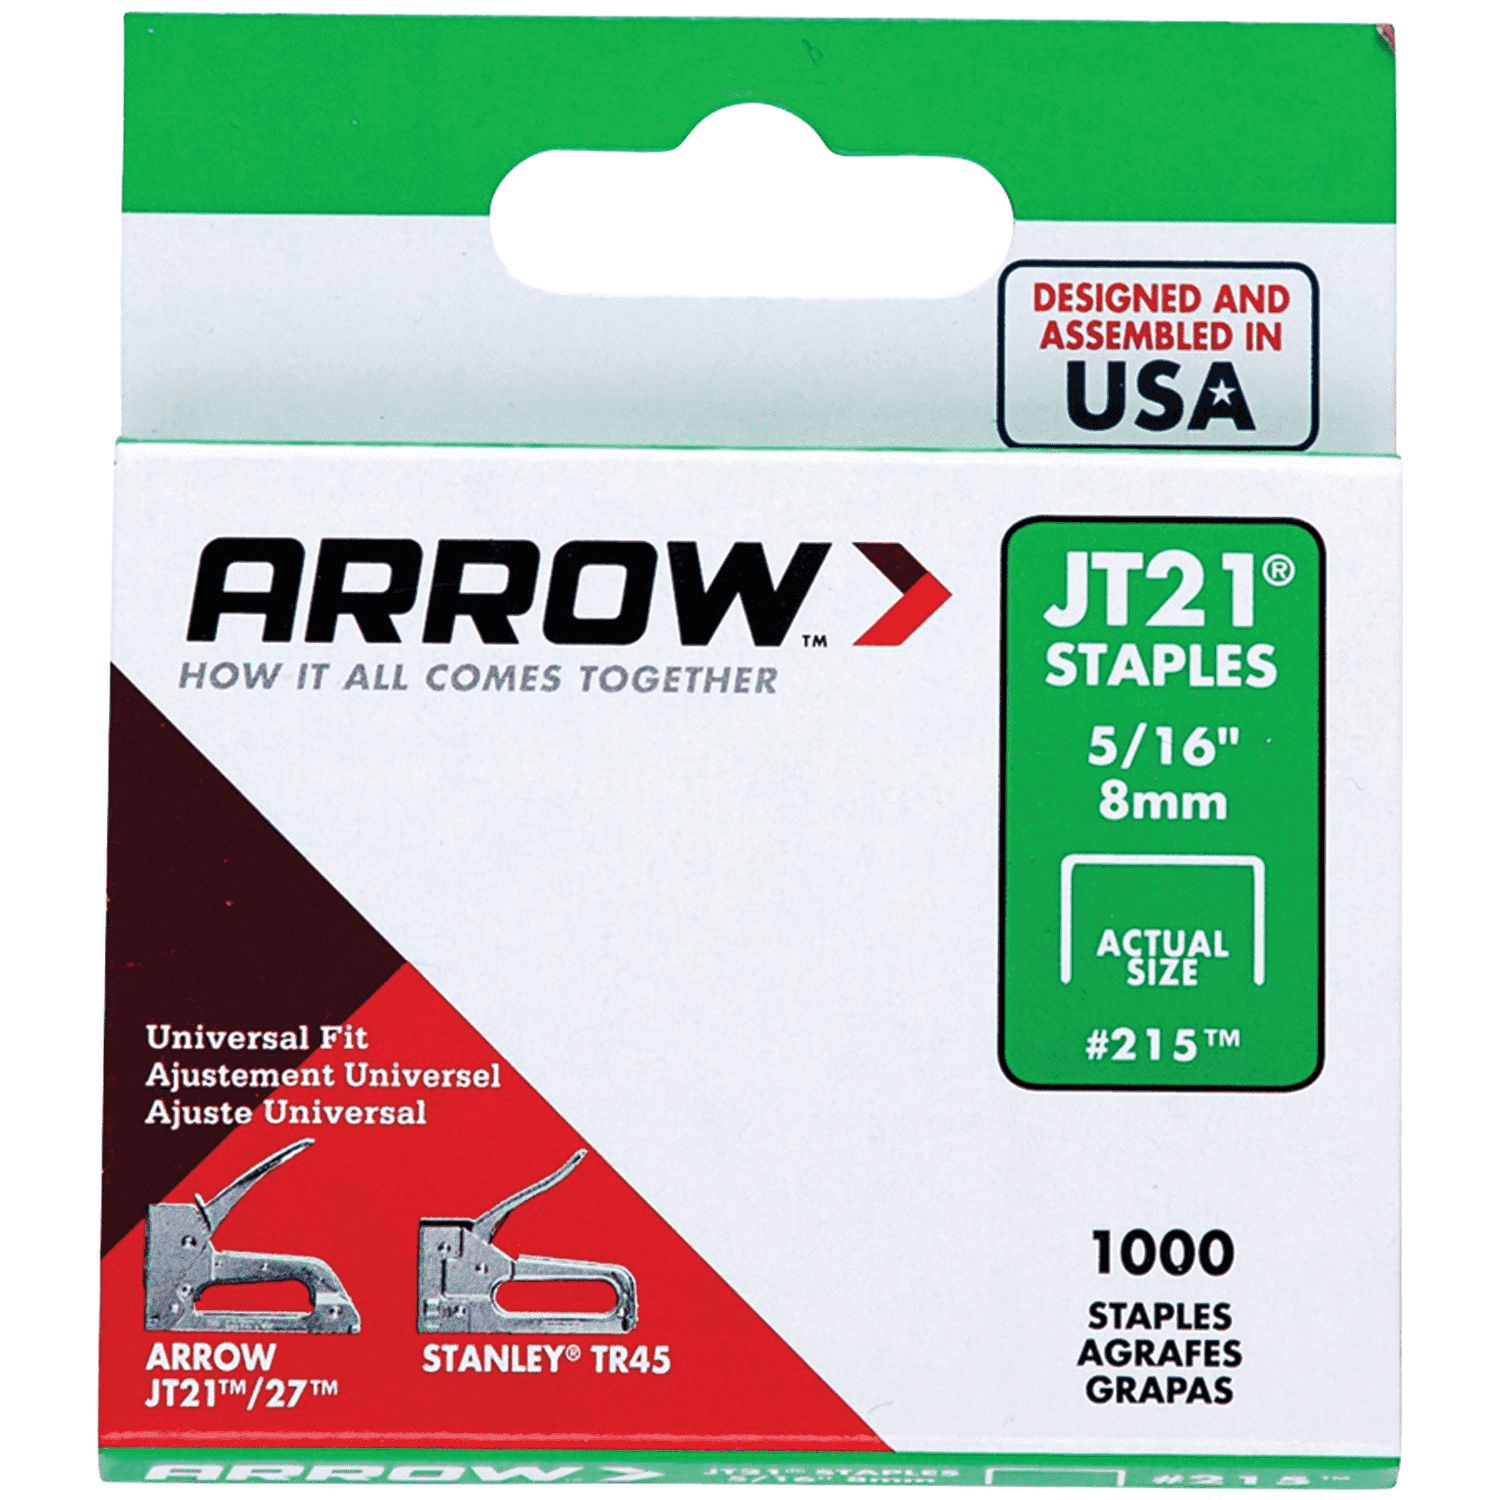 Arrow J21 Staples 5/16" 8mm